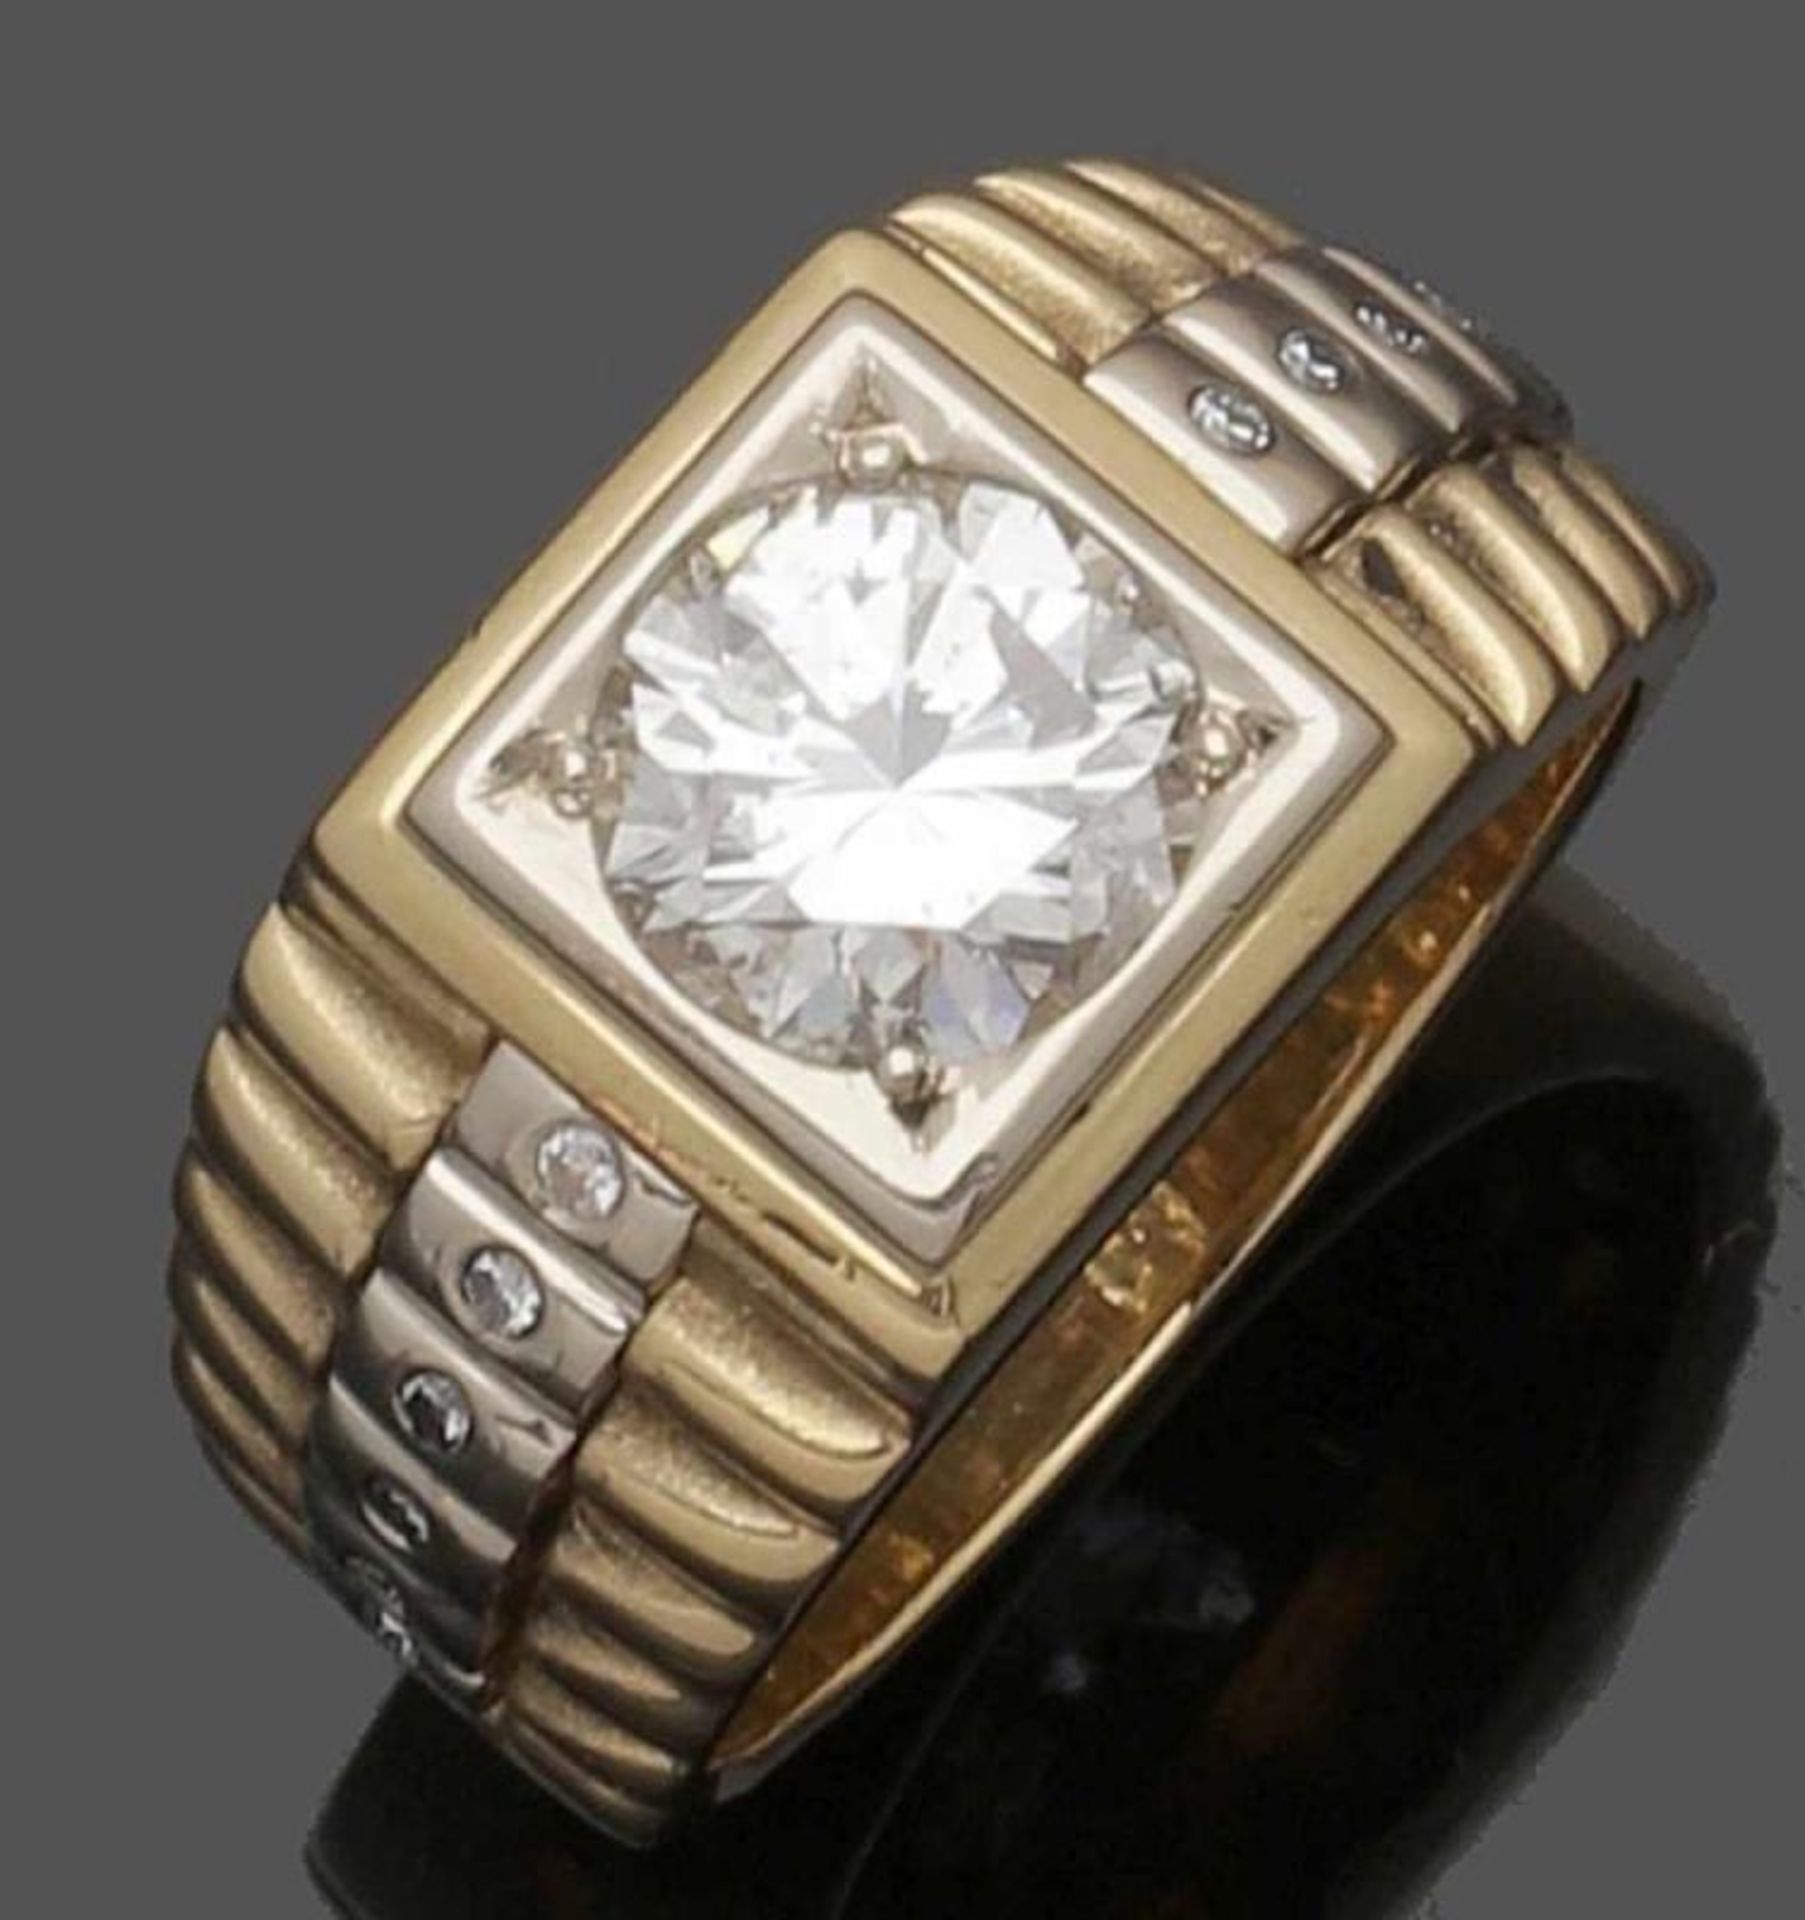 Massiver Ring mit einem Brillanten von 2,3 ct. A Lady's or Gentleman's diamond ring 750er GG, - Bild 2 aus 2